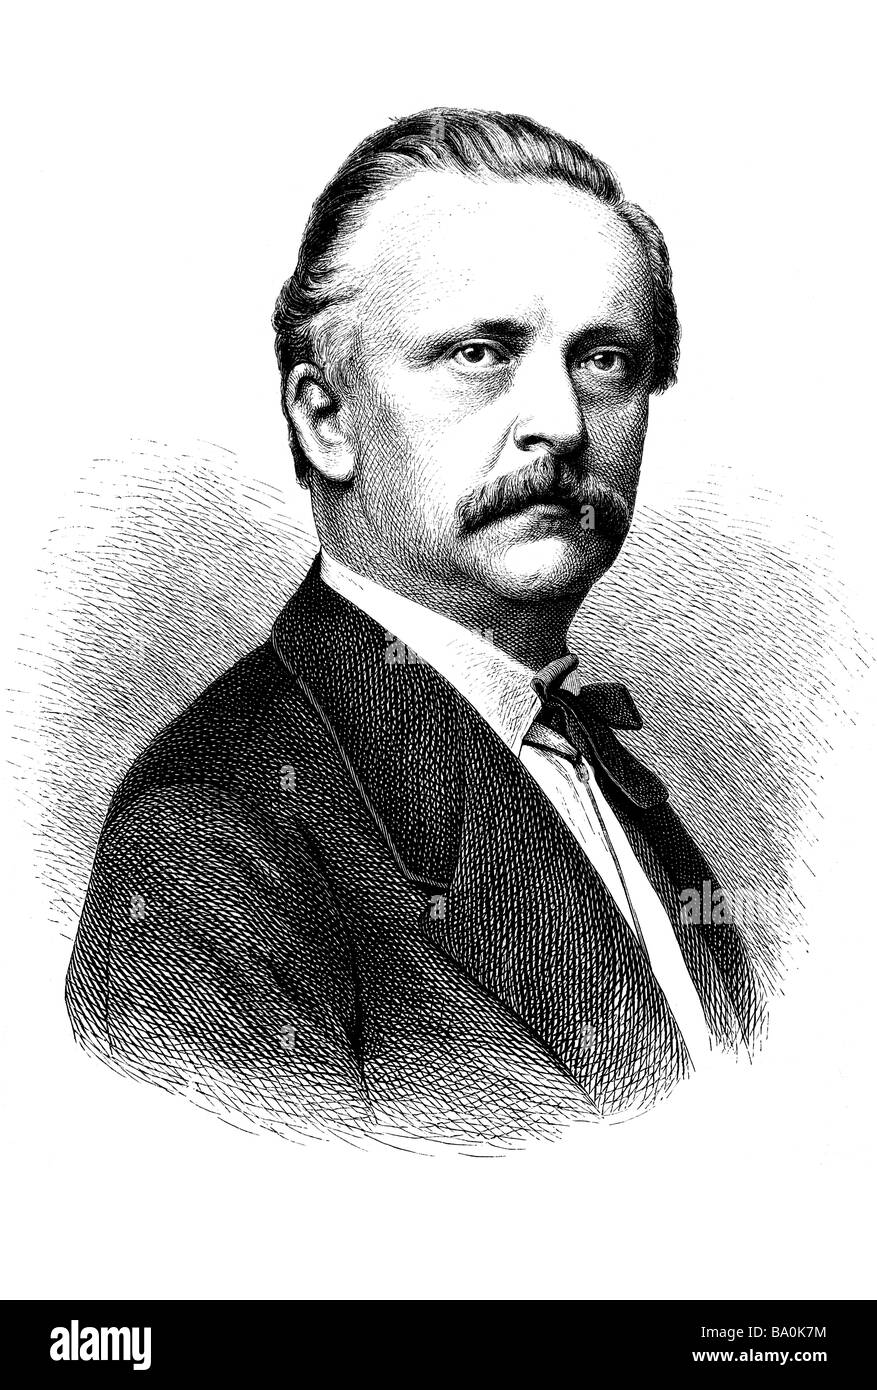 Hermann Ludwig Ferdinand von Helmholtz, 31. 8 août 1821 - Potsdam. Septembre 1894 Charlottenburg Banque D'Images